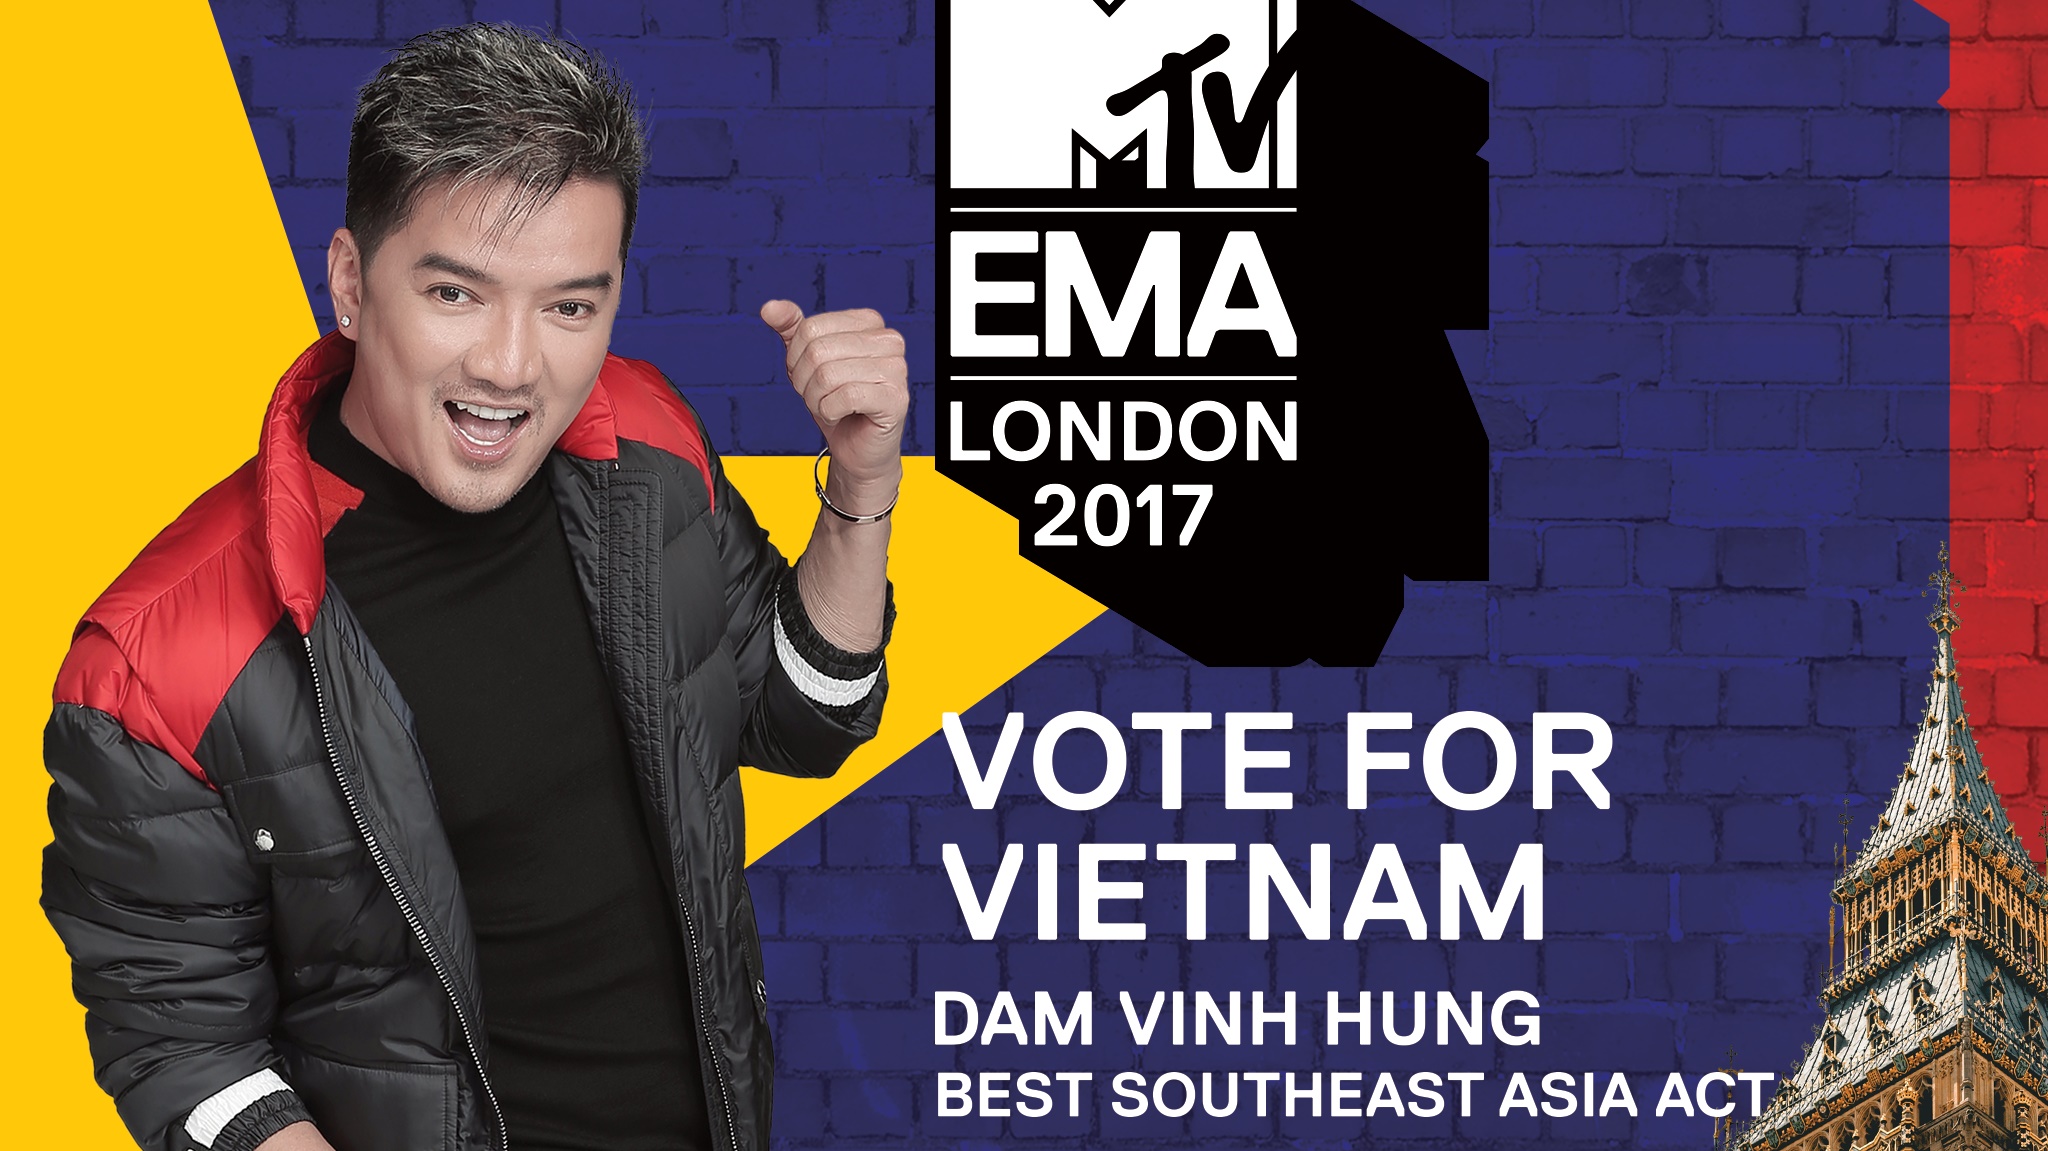 Hình ảnh Đàm Vĩnh Hưng kêu gọi bình chọn trên trang MTV